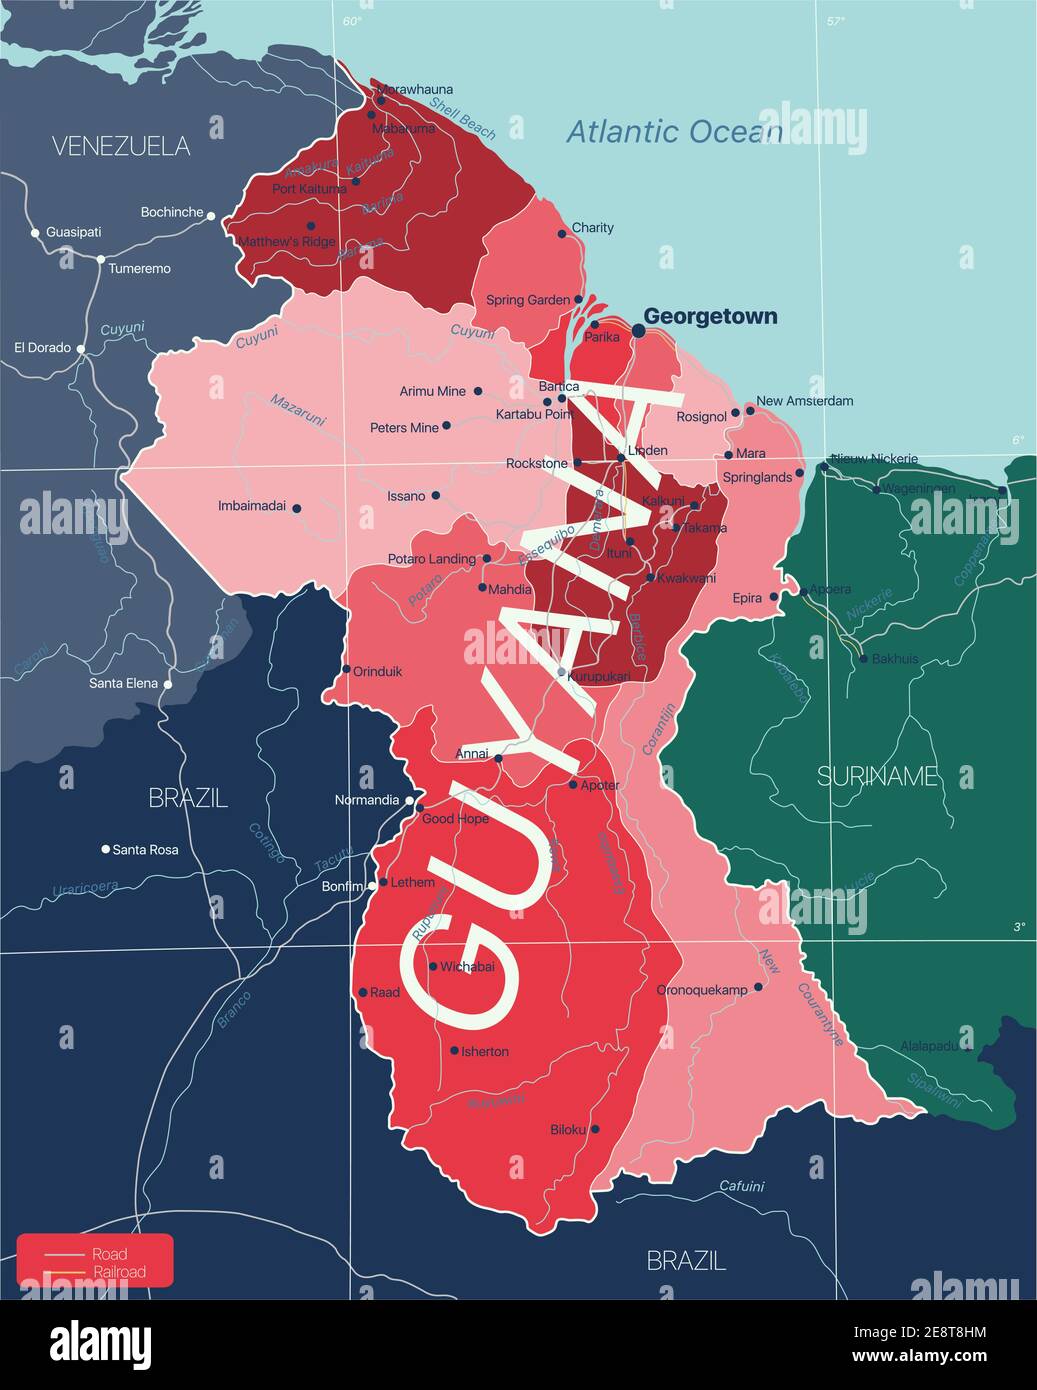 Guyana Land detaillierte editierbare Karte mit Regionen Städte und Städte, Straßen und Eisenbahnen, geografische Standorte. Vector EPS-10-Datei Stock Vektor